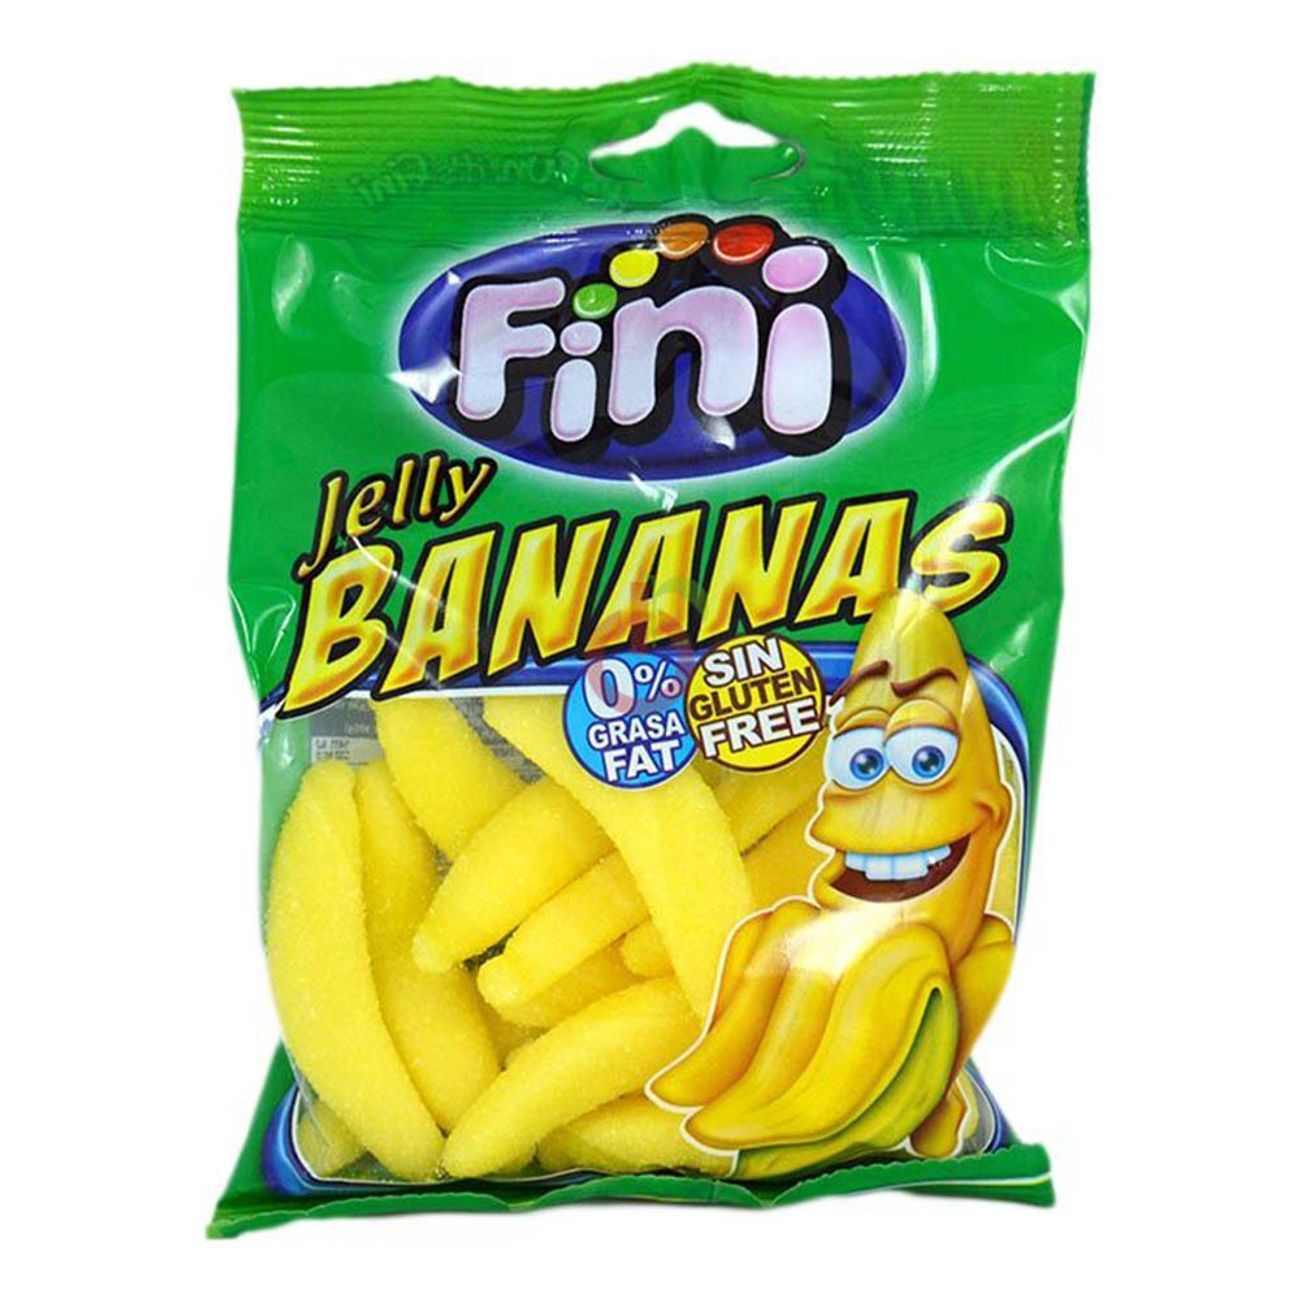 fini-bananer-pase-1